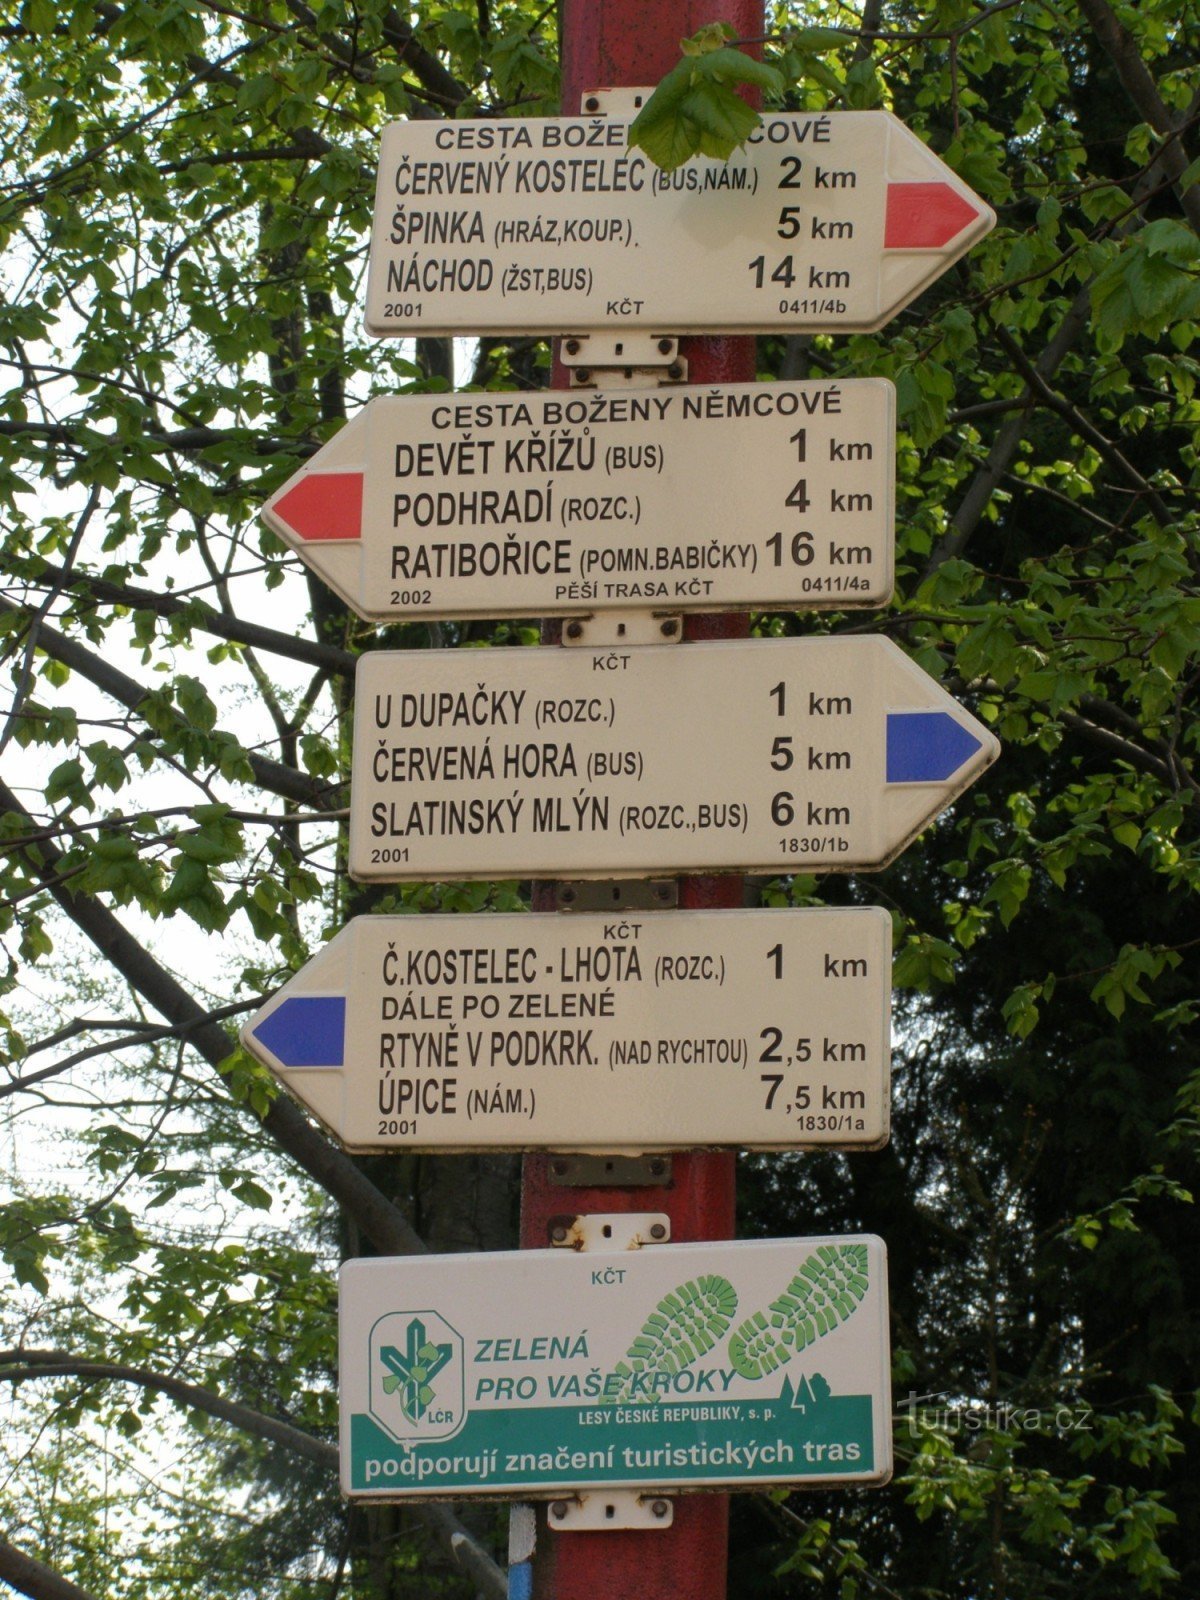 туристический перекресток Червены Костелец - железнодорожная станция, железнодорожная станция